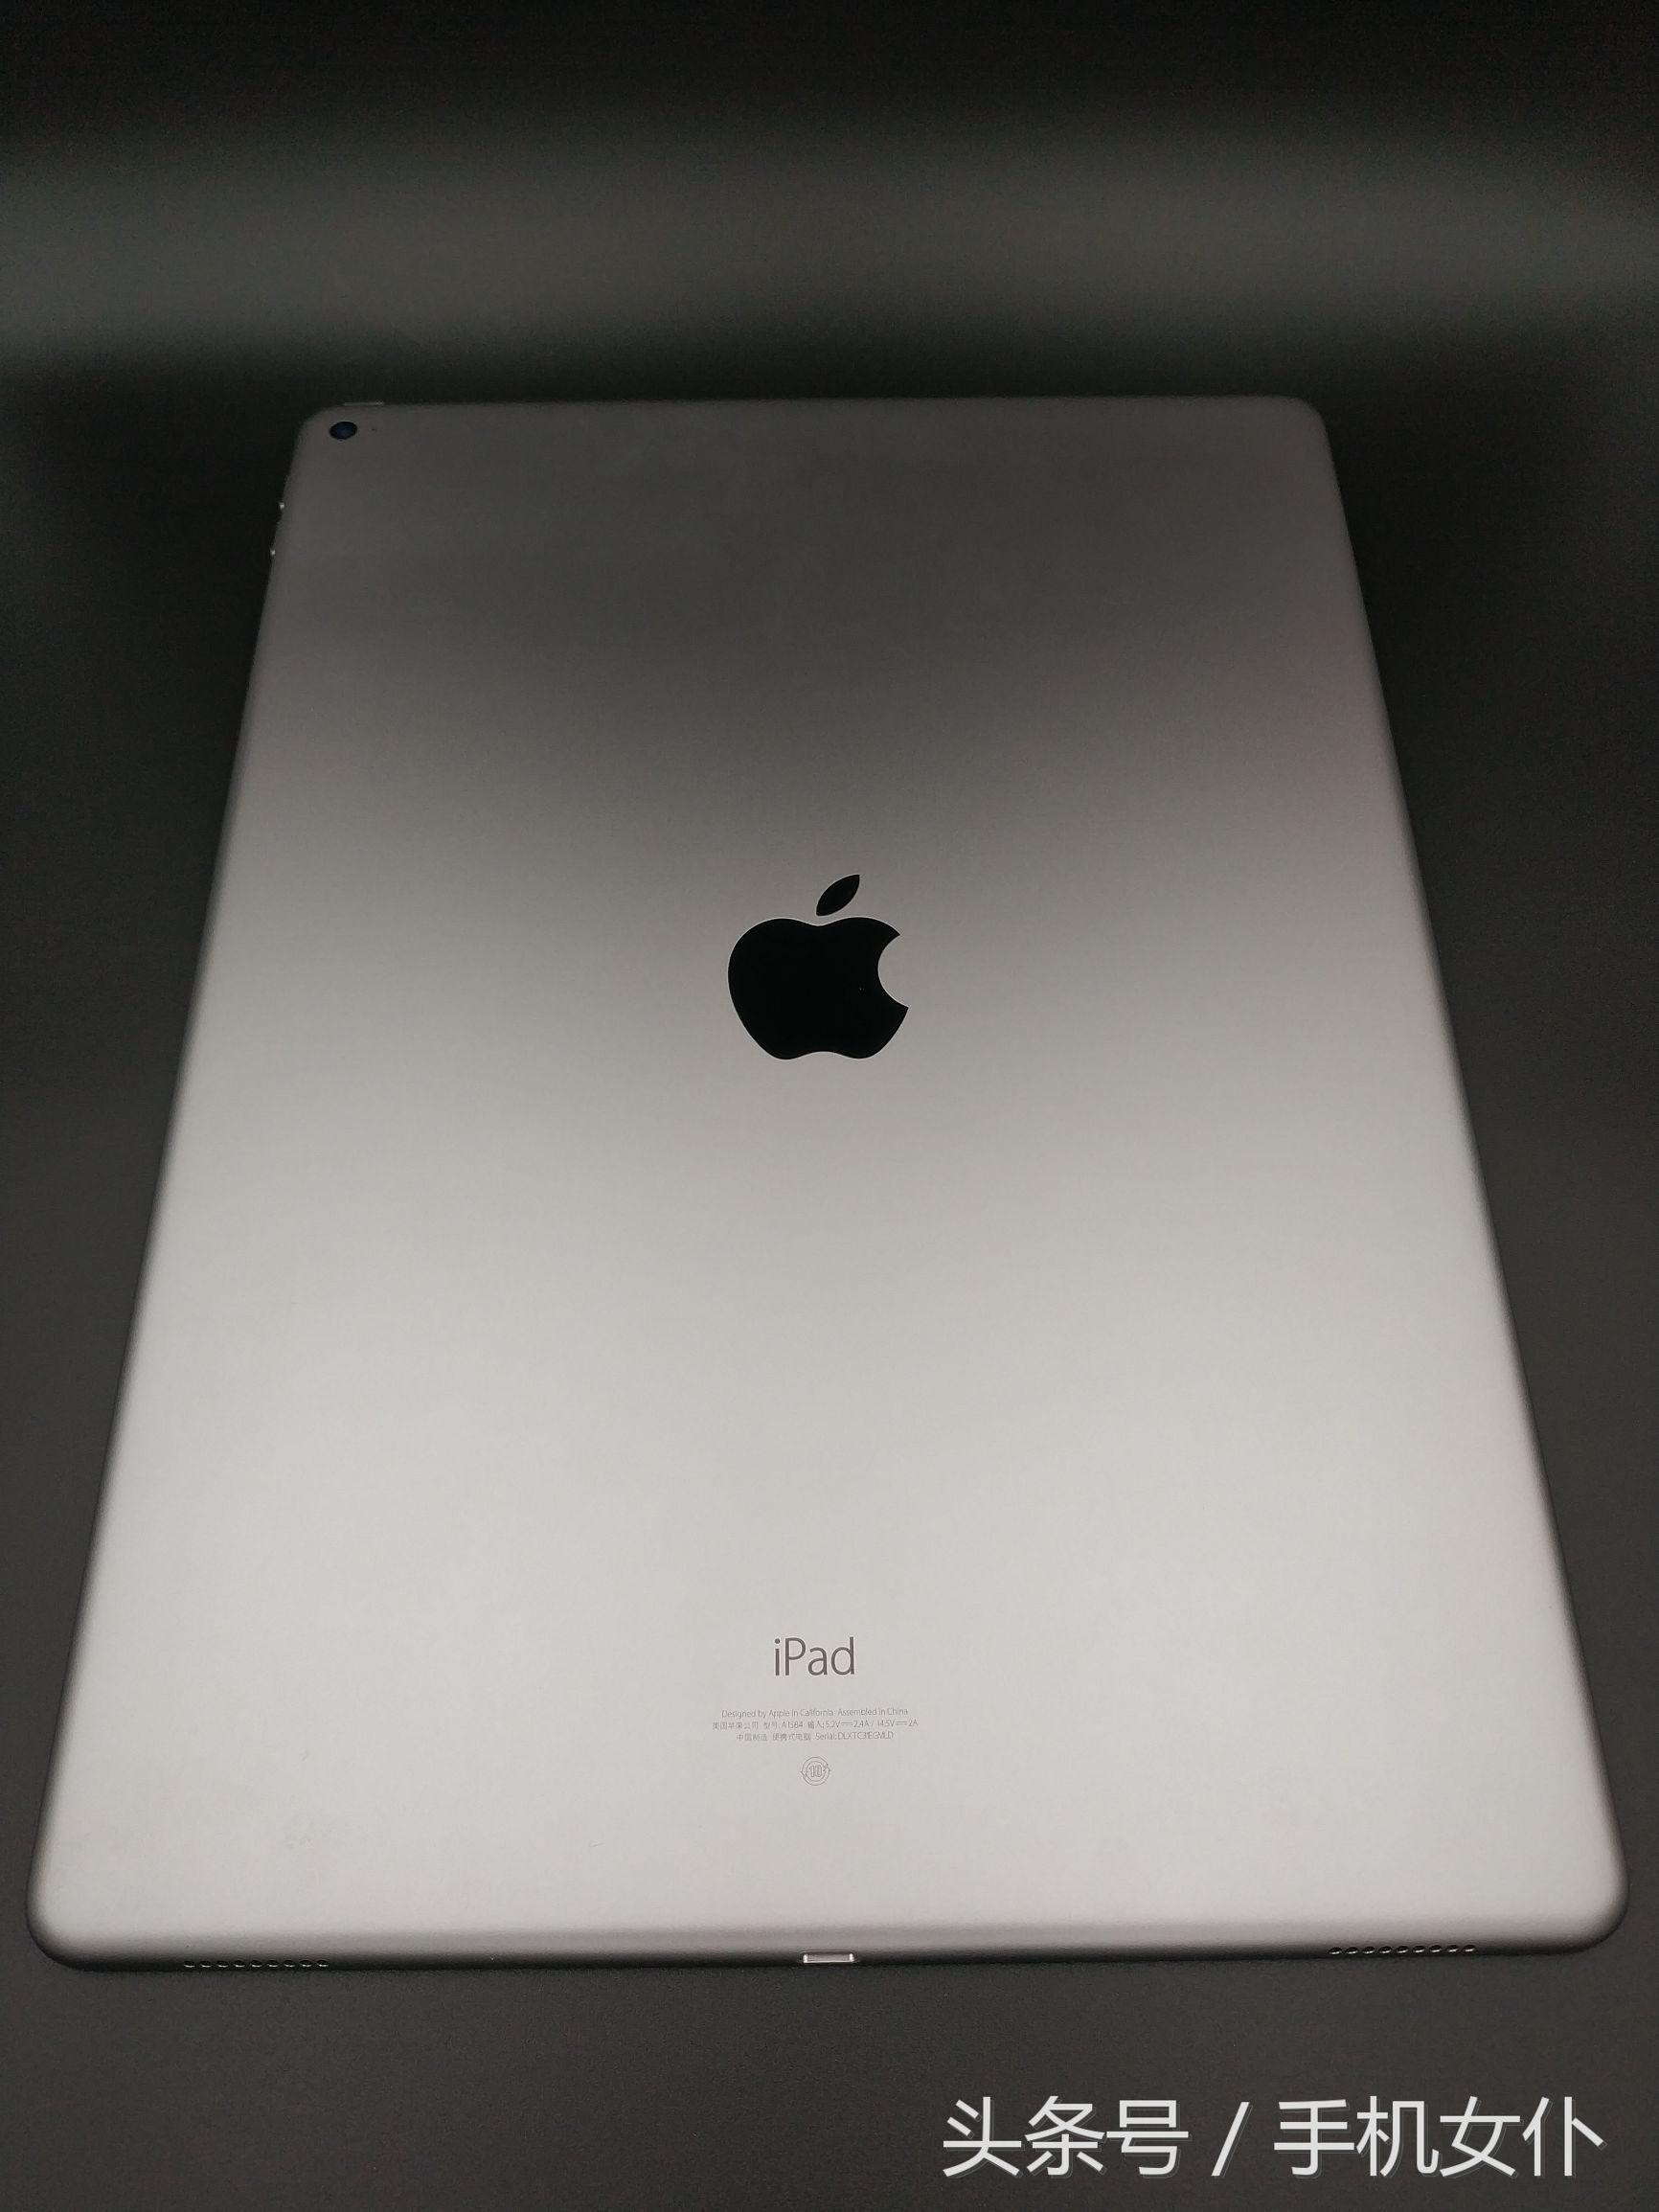 12.9英寸苹果iPad Pro有多大？和iPhone 7 Plus对比一下